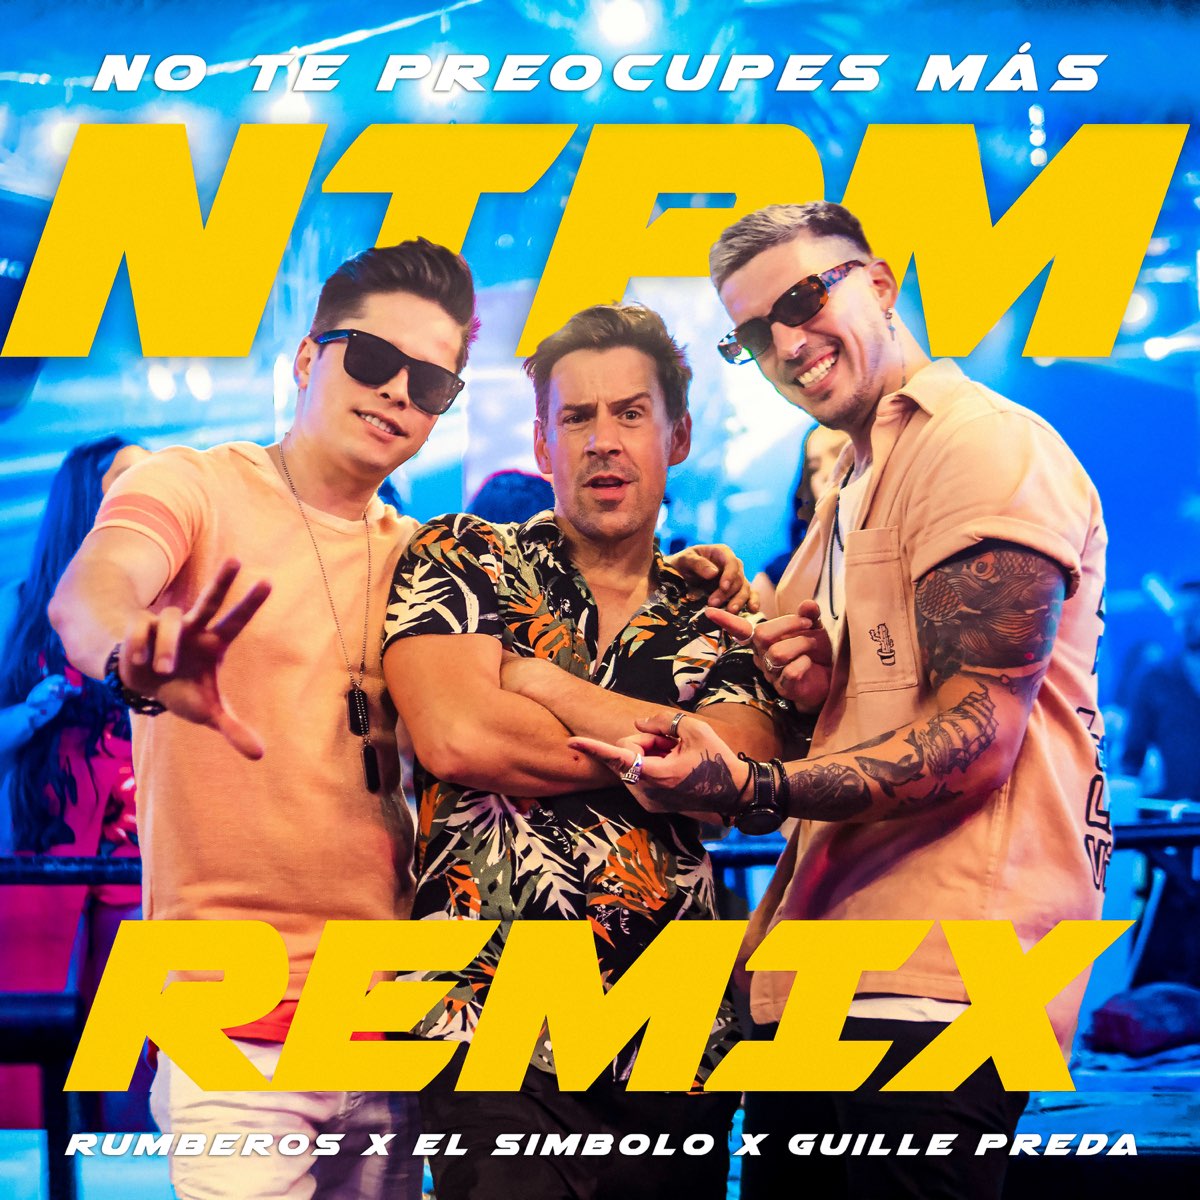 No Te Preocupes Más (Guille Preda Remix) - Single by El Símbolo & Rumberos  on Apple Music